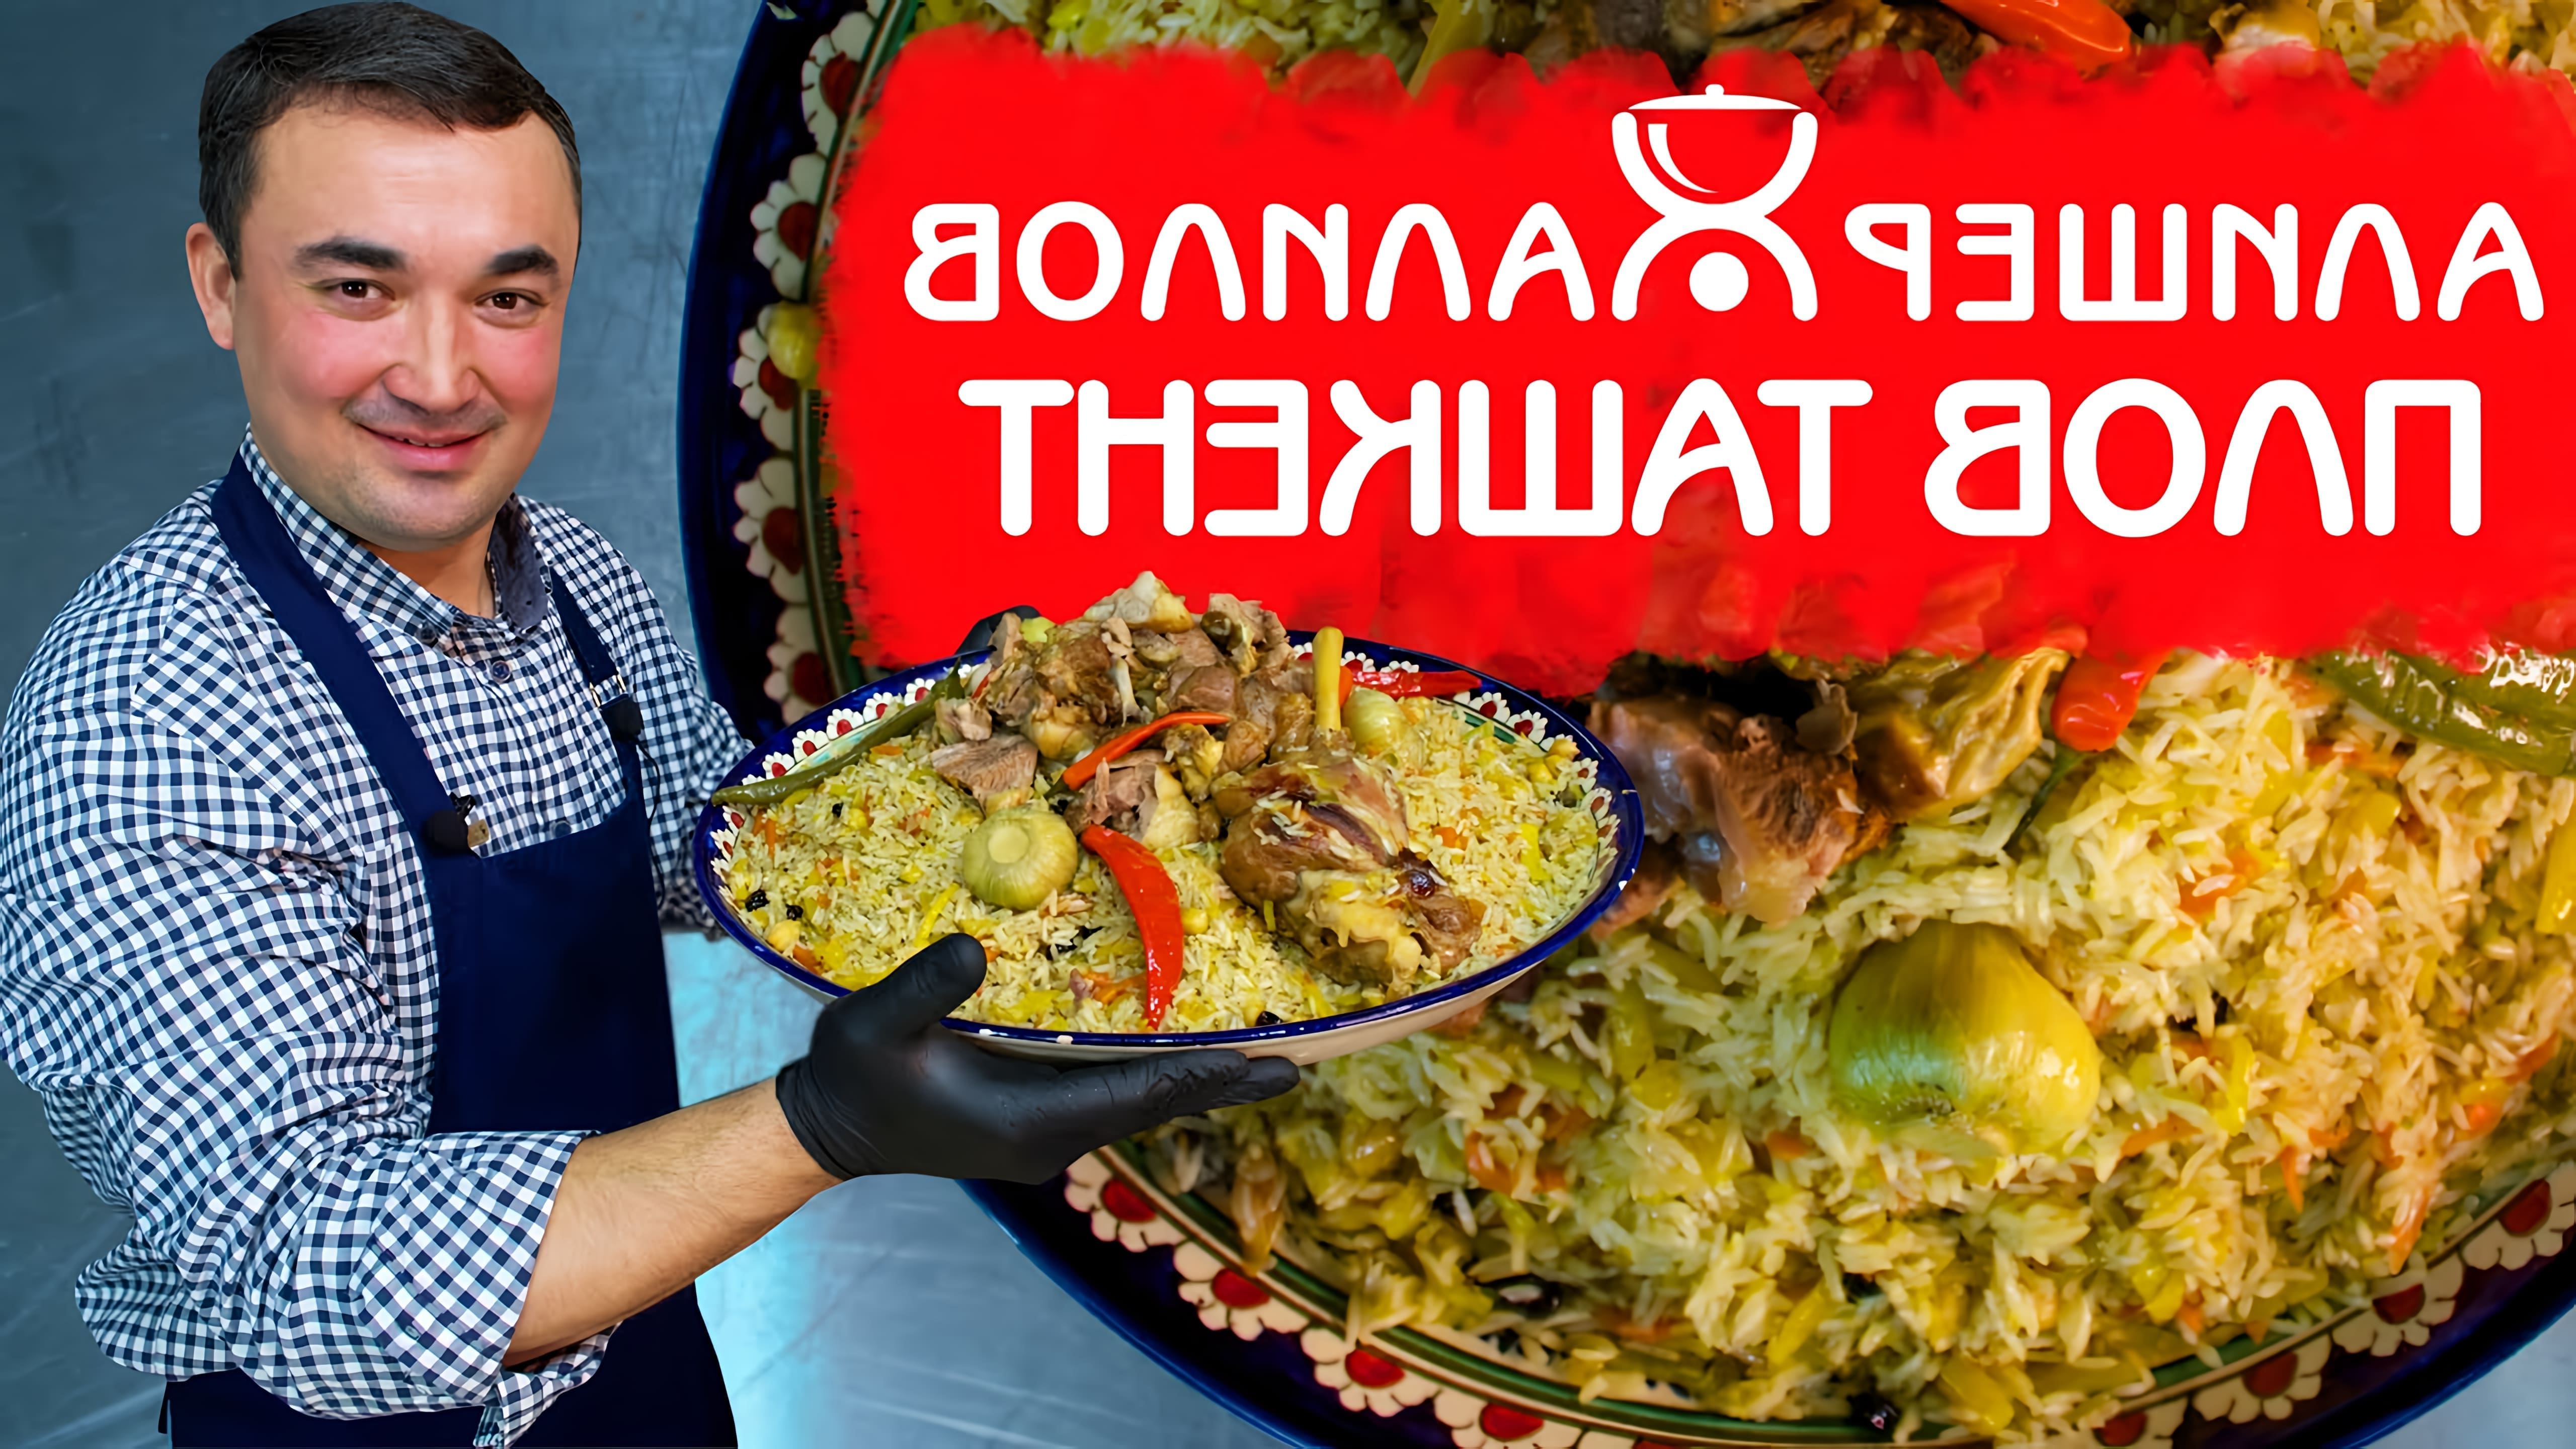 Видео как приготовить Ташкентский плов, праздничное рисовое блюдо из Узбекистана